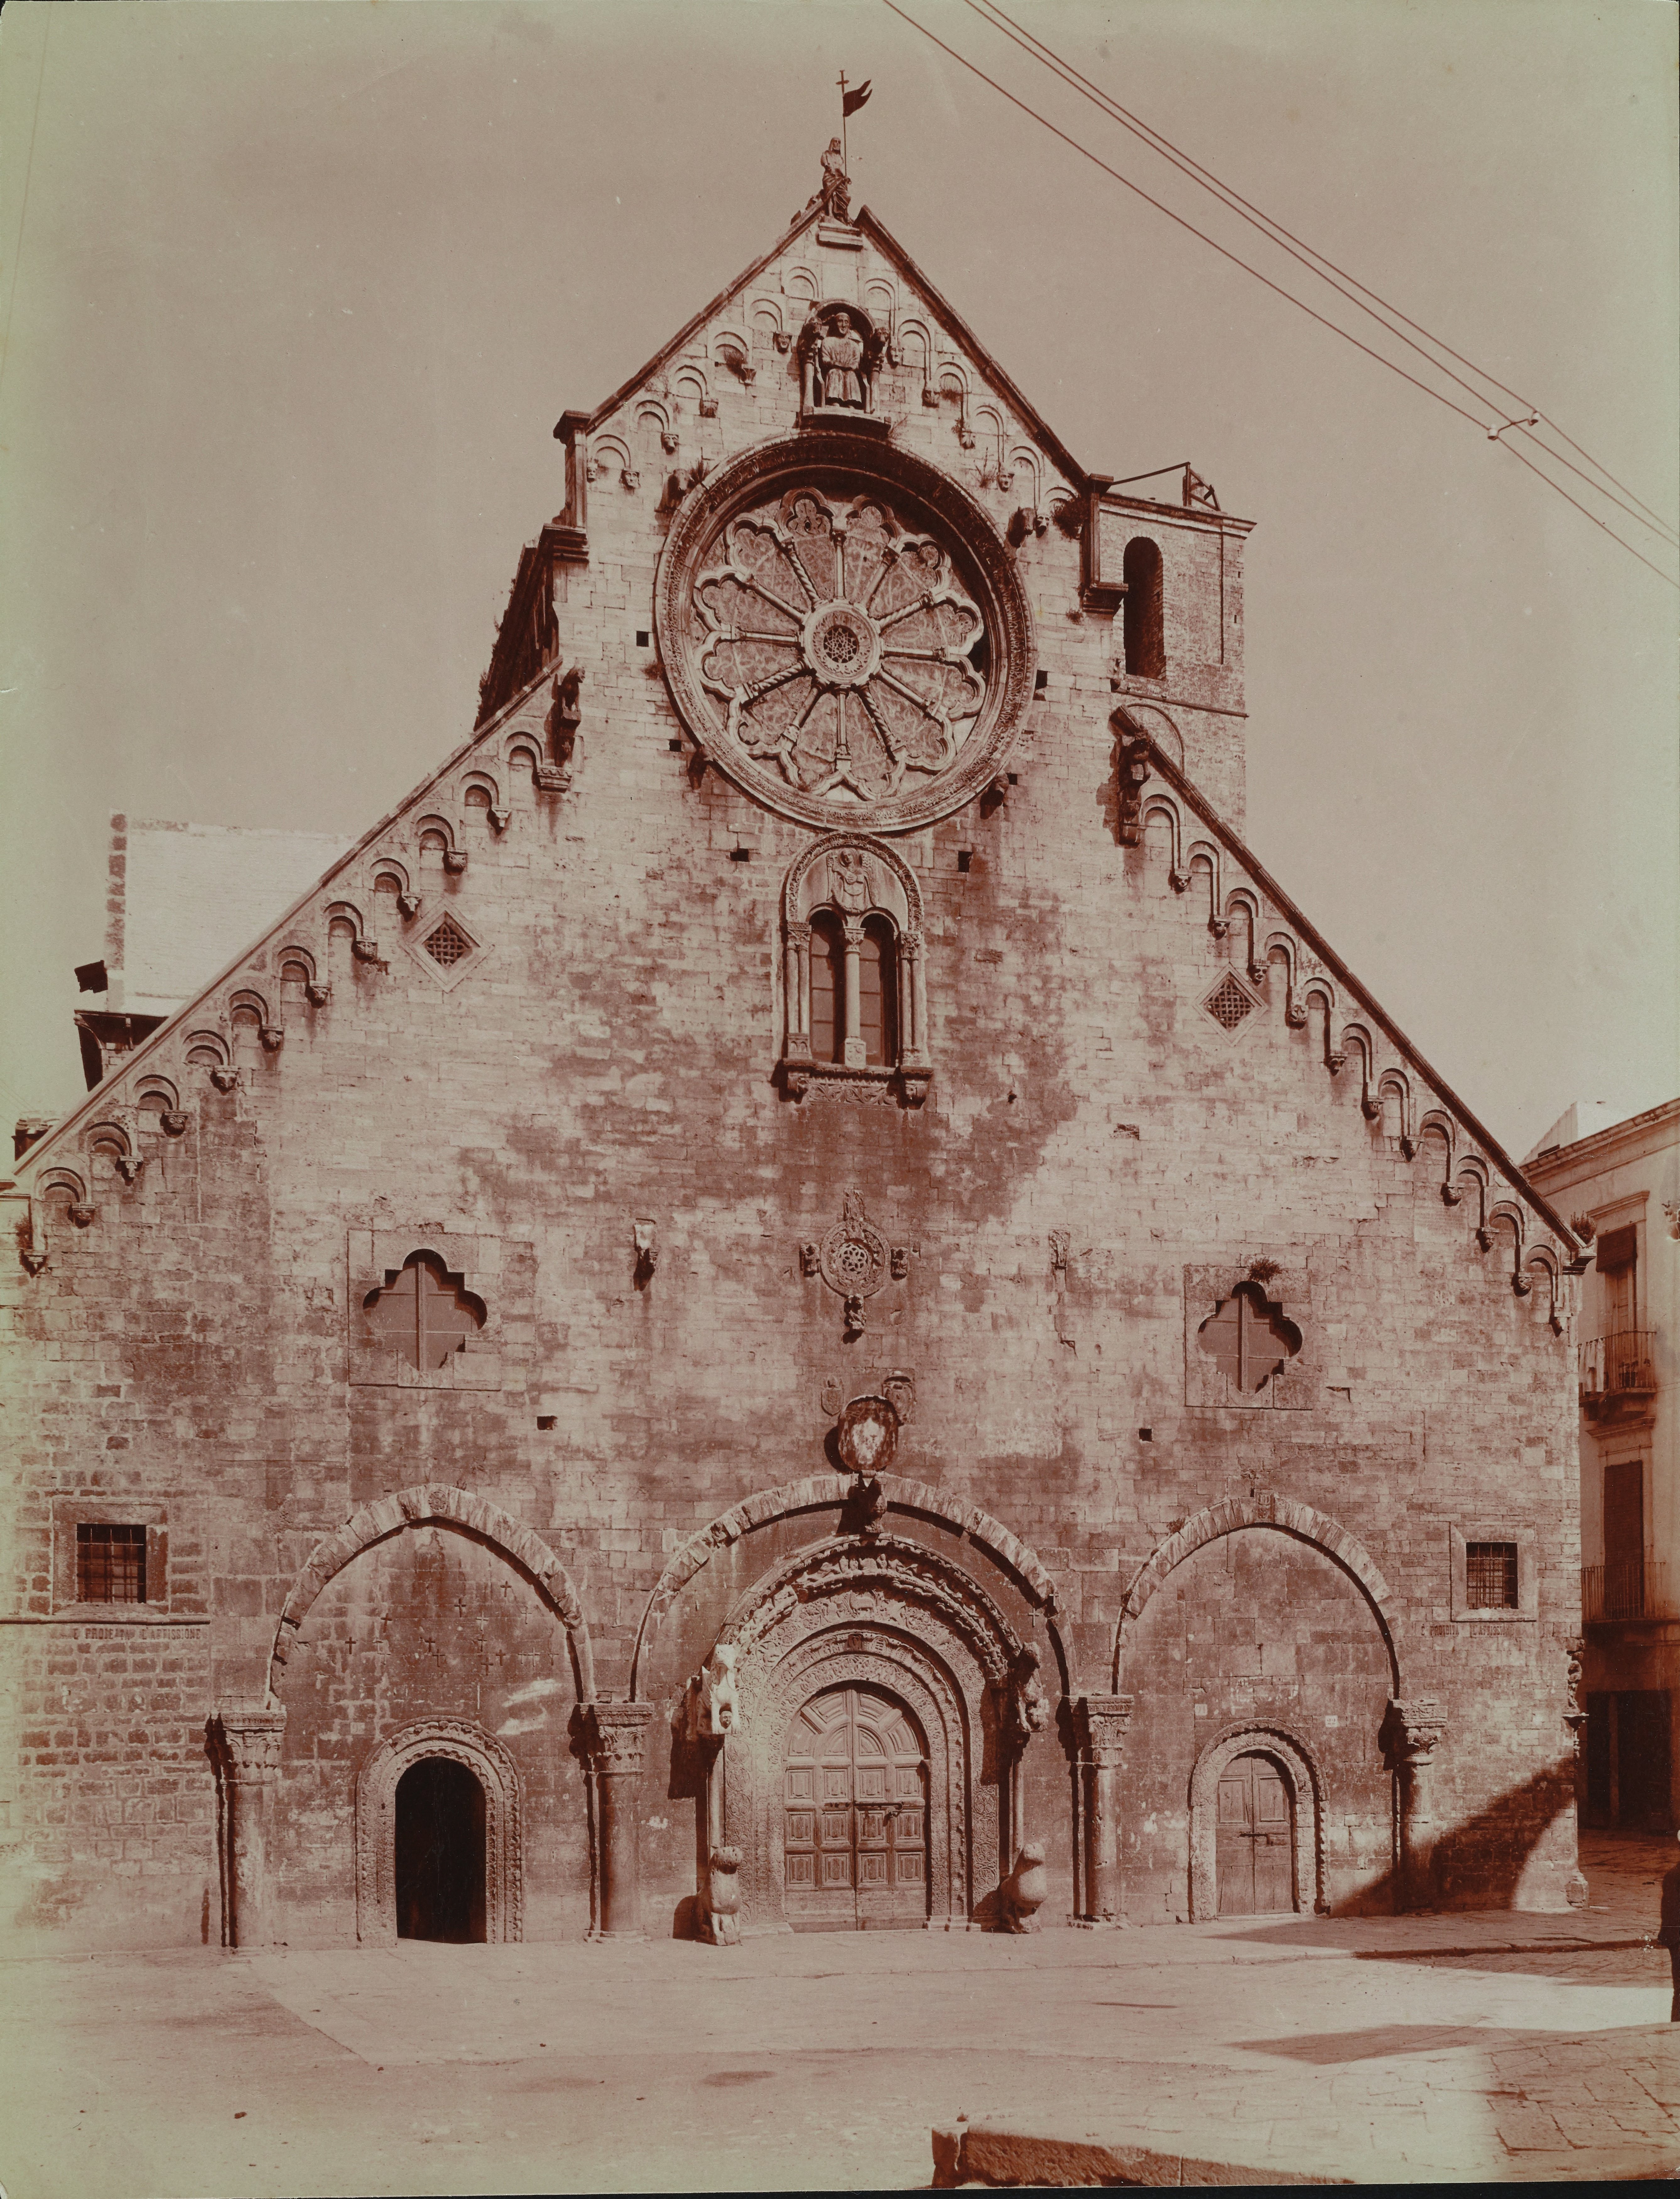 Fotografo non identificato, Ruvo di Puglia - Cattedrale S. Maria Assunta, facciata, 1901-1910, albumina, MPI6091647